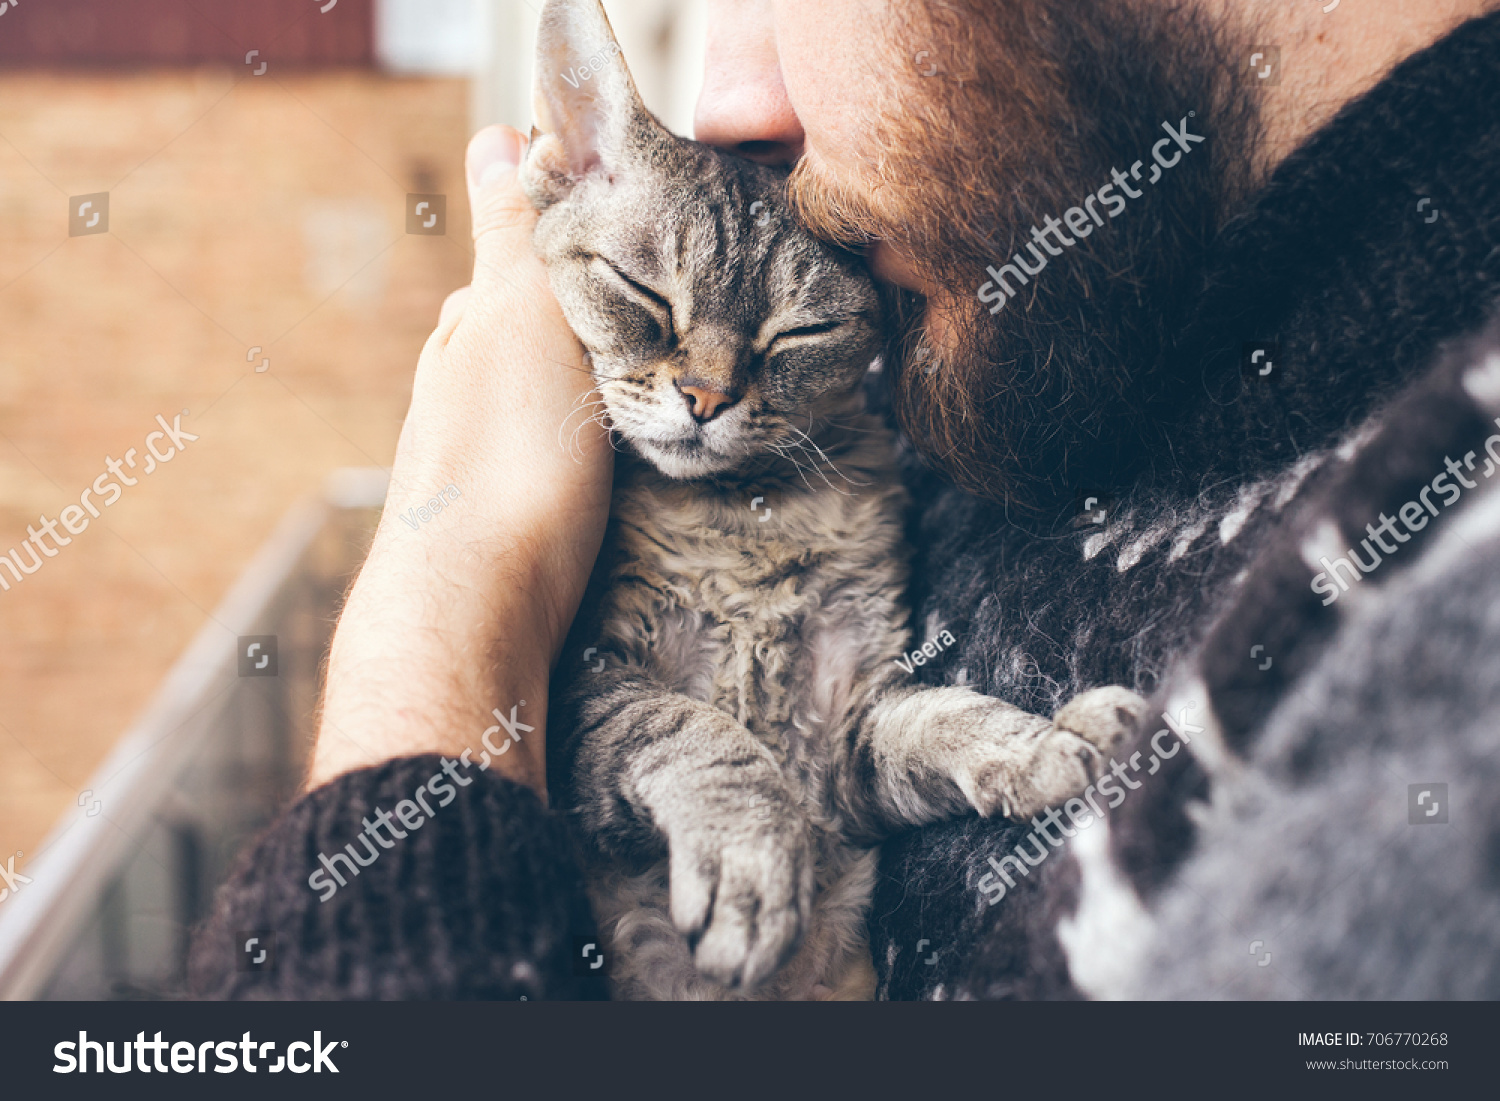 アイスランドのセーターを着た顎鬚の男の接写で かわいい紫のデボンレックスの猫を抱き 口づけしている 猫の口輪と男の顔 猫と人間を愛して 関係は悪い の写真素材 今すぐ編集